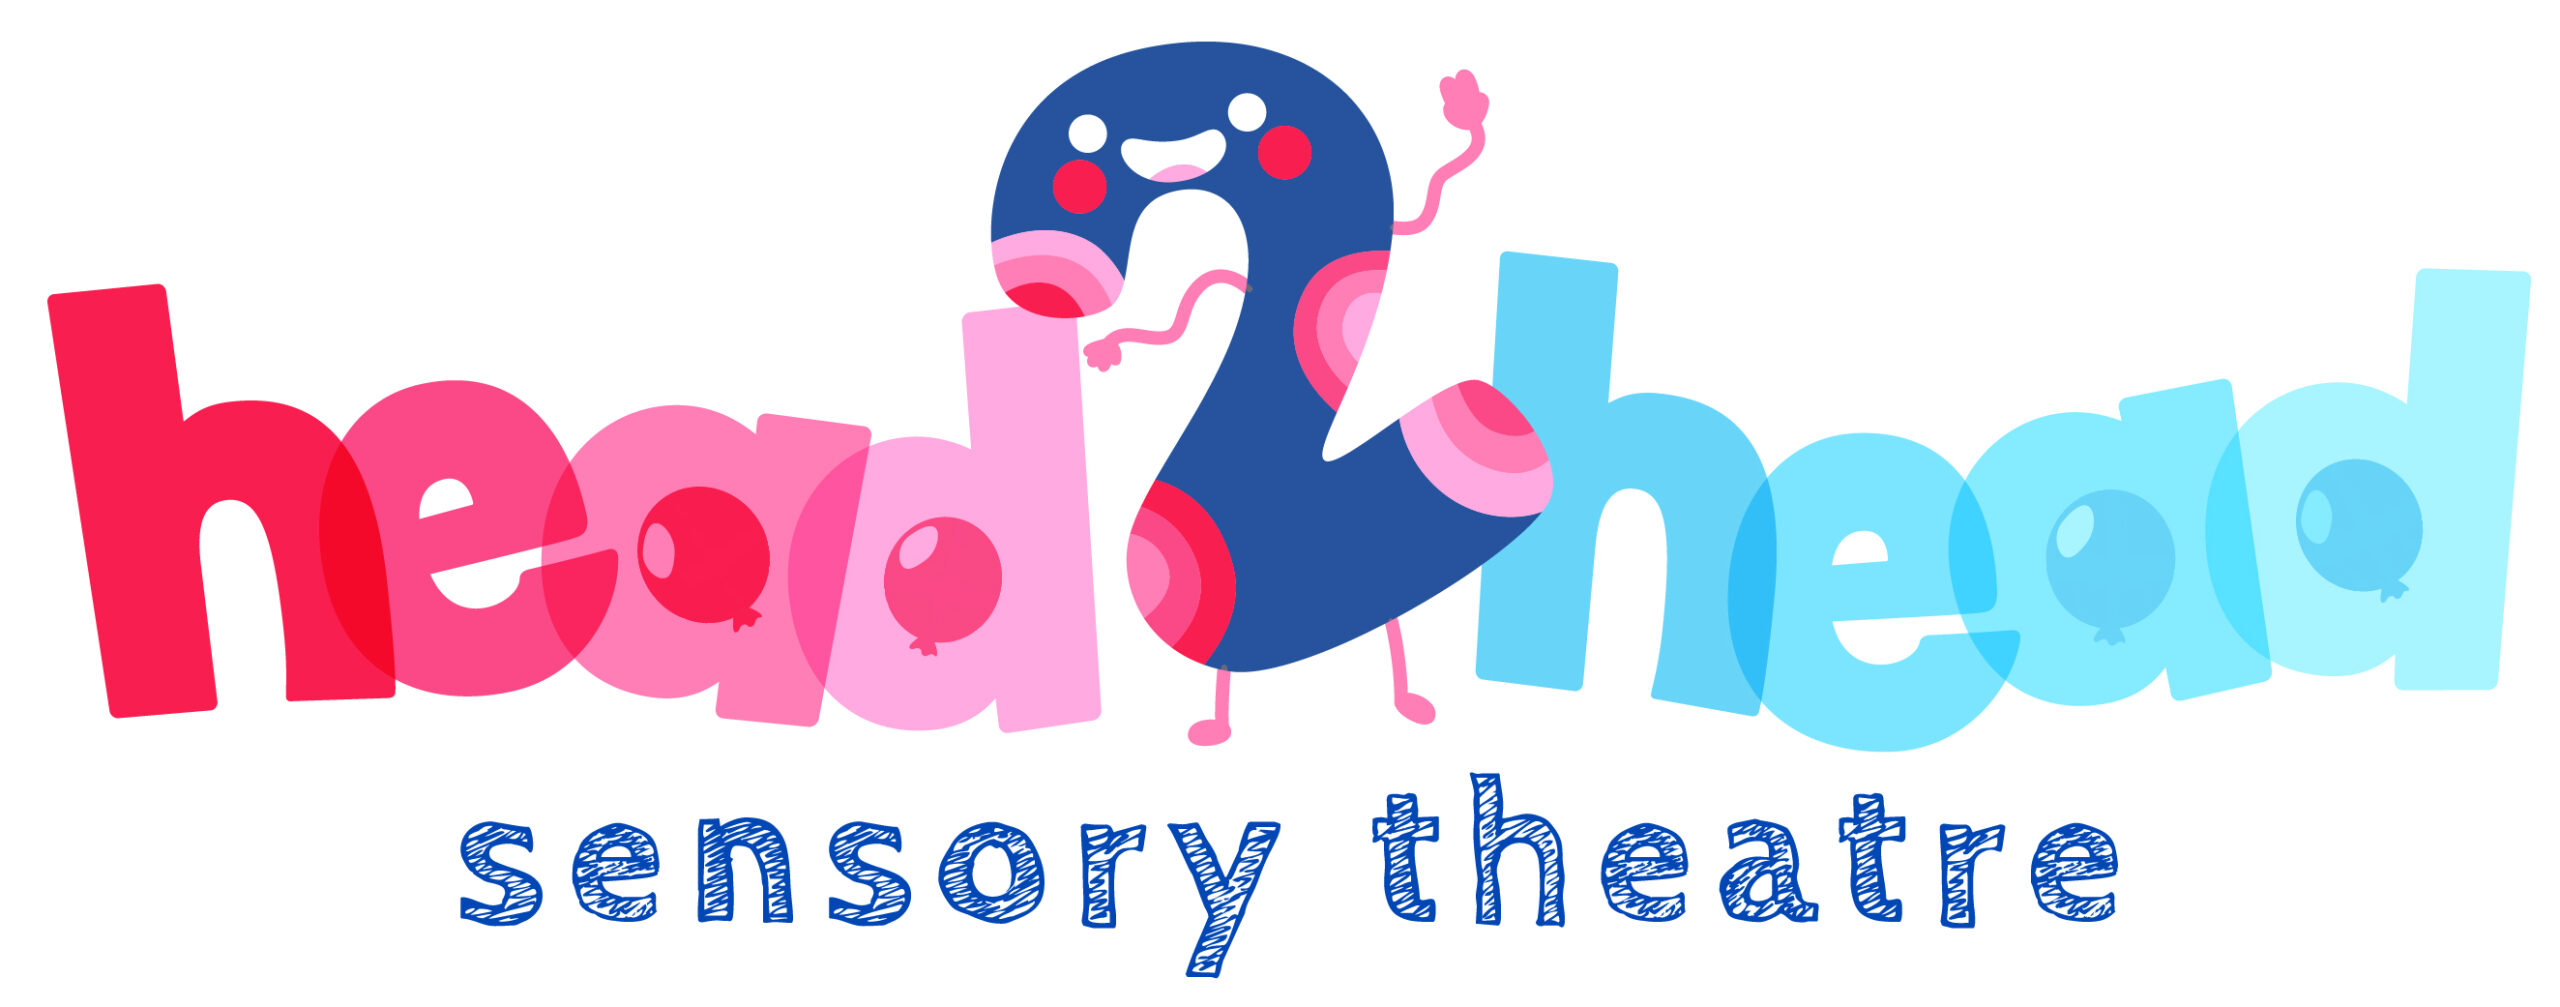 Ta-da – the big reveal for local theatre charity’s new accessible website - Head2Head Sensory Theatre